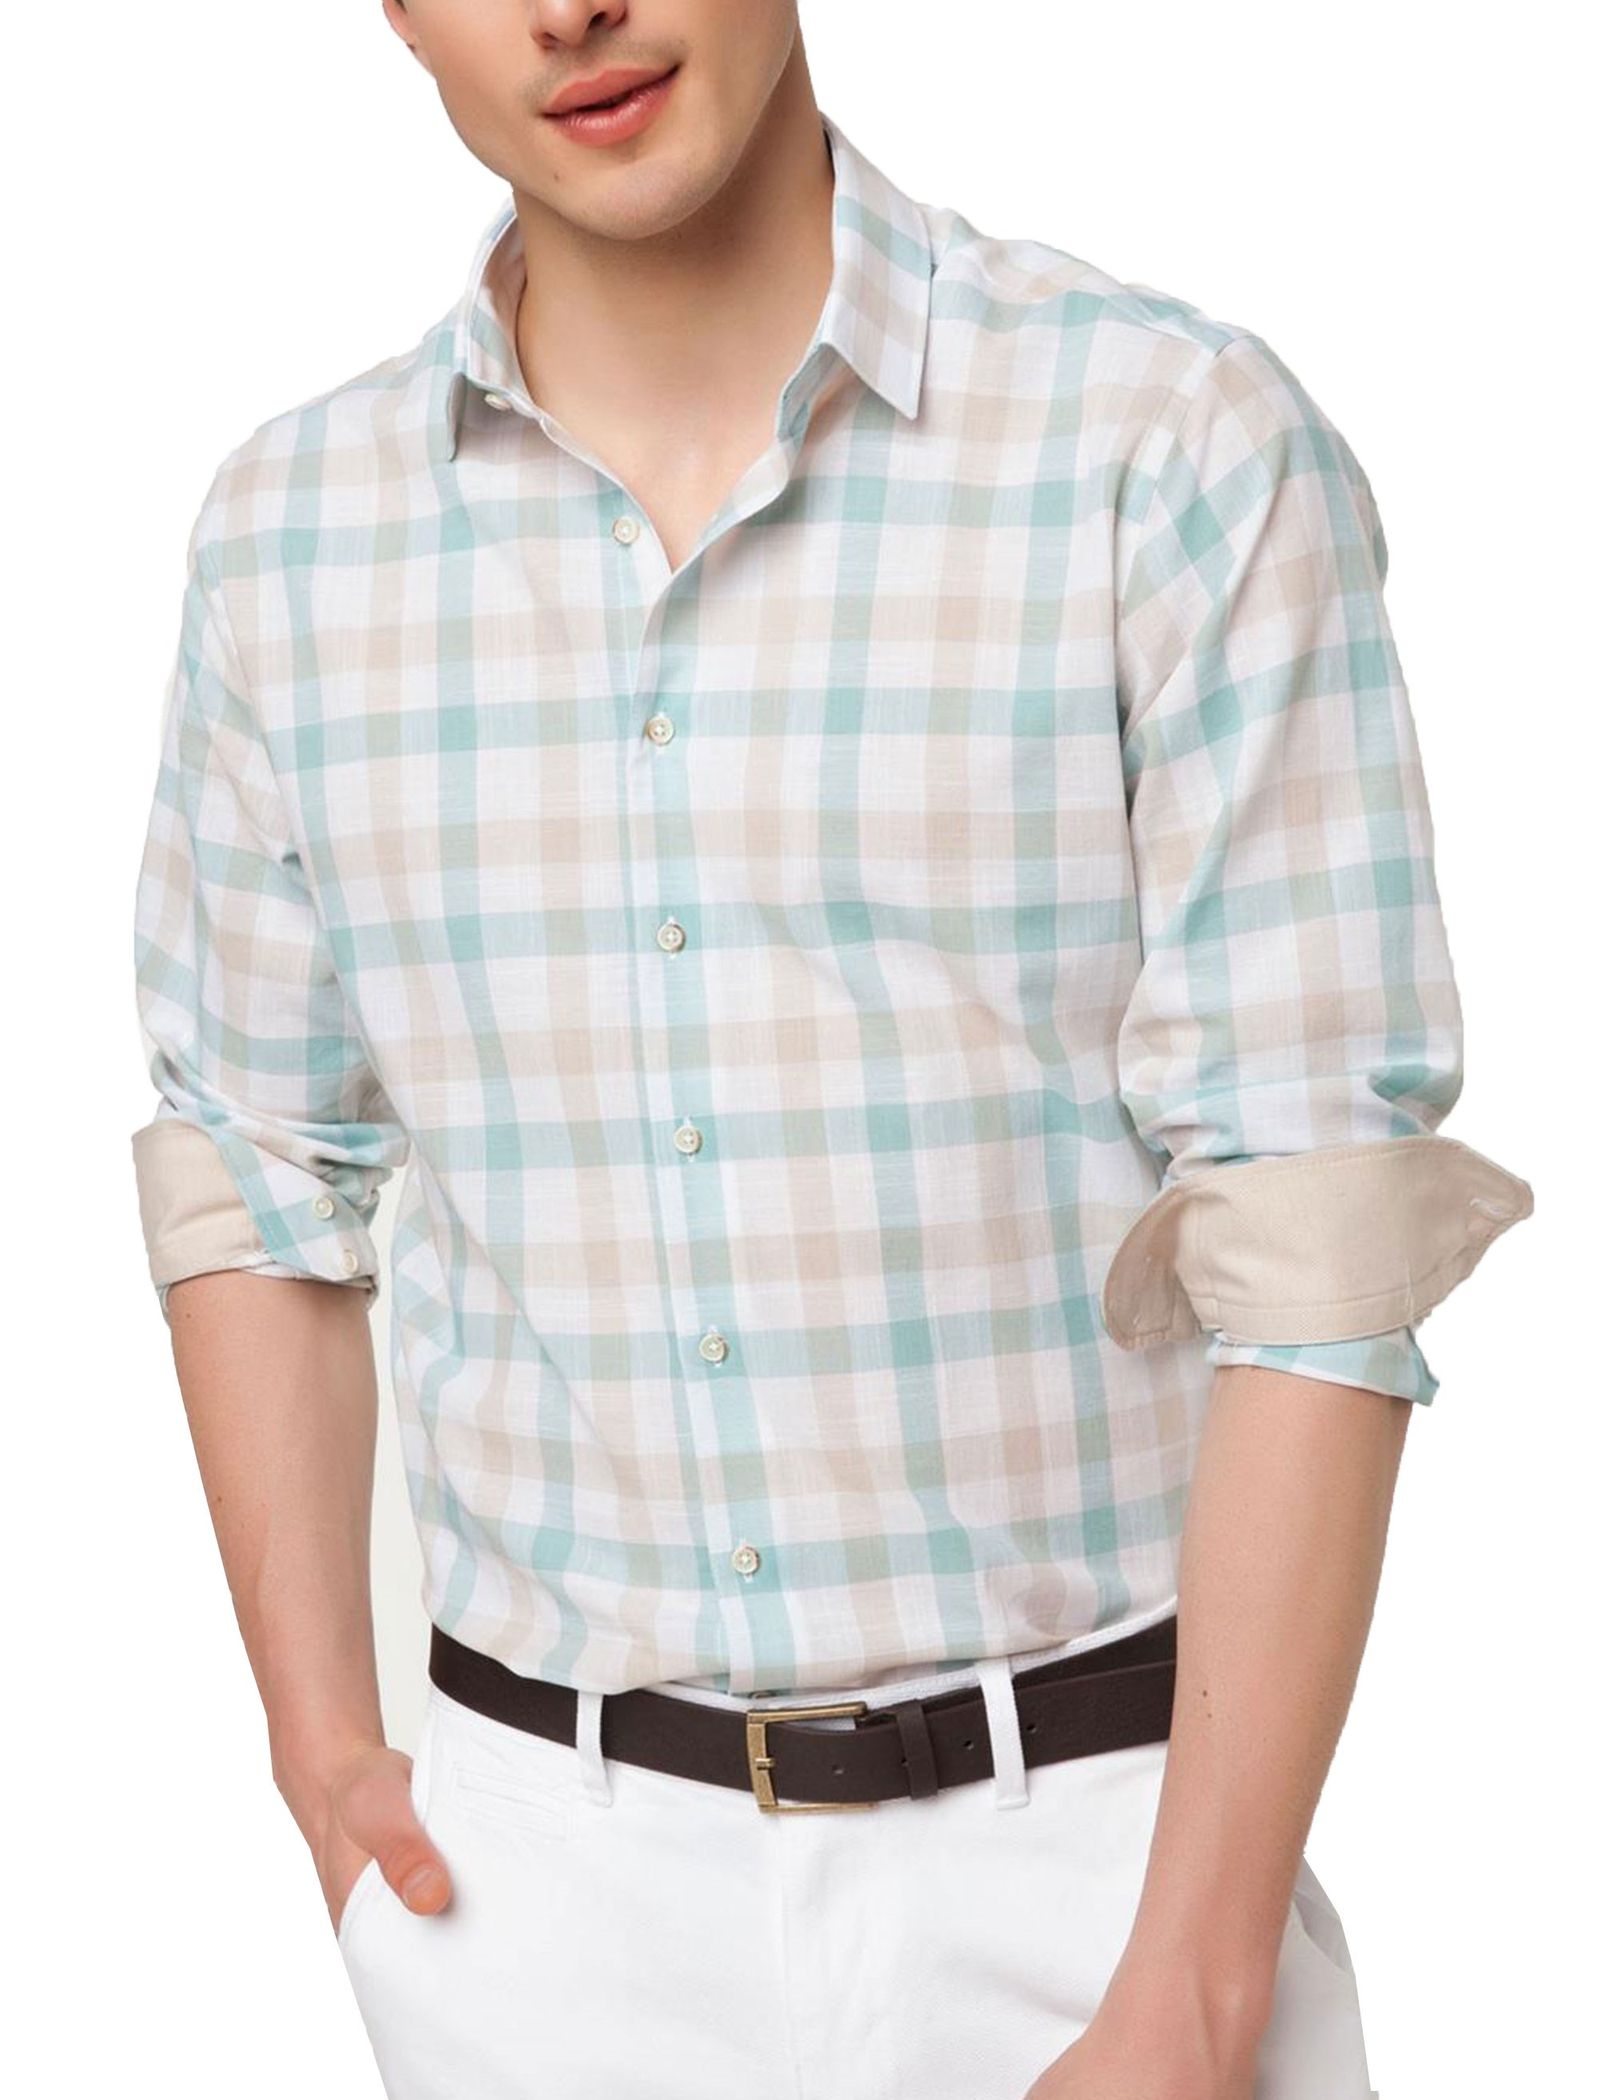 پیراهن نخی آستین بلند مردانه - دفکتو - سبز آبي و کرم - 1